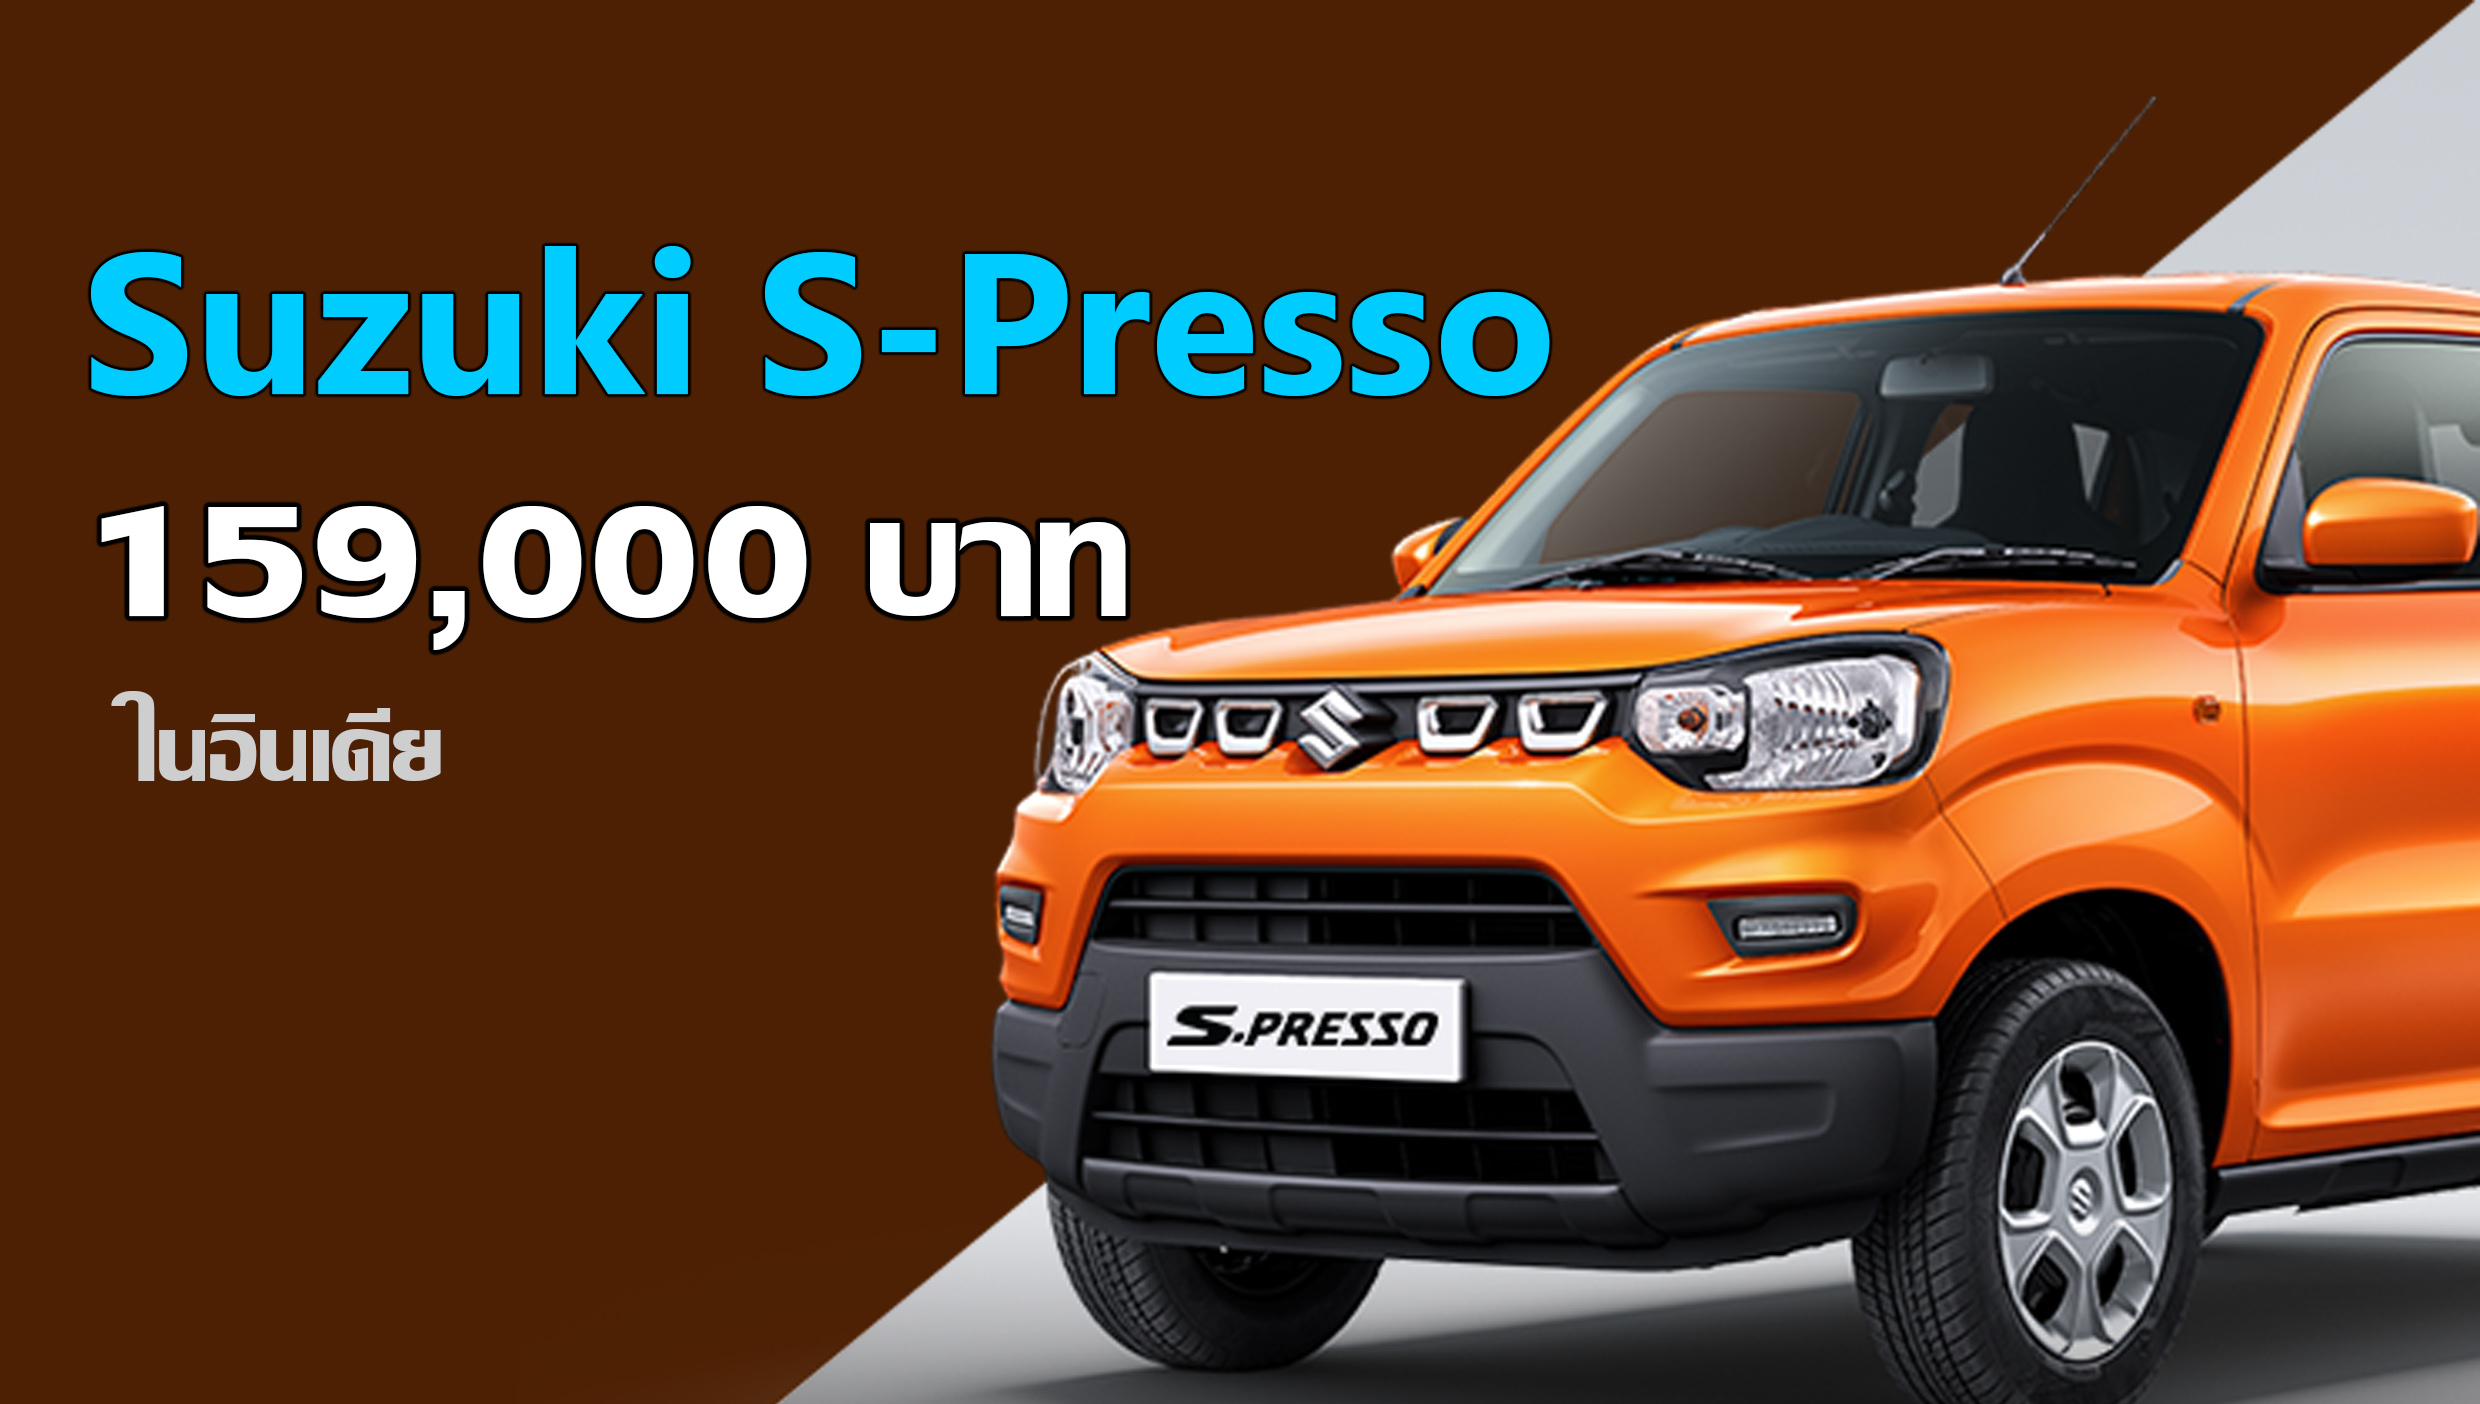 Suzuki S-Presso ราคาสุดถูก 159,000 บาท ในอินเดีย + เบนซิน 1.0 ลิตร 67 แรงม้า